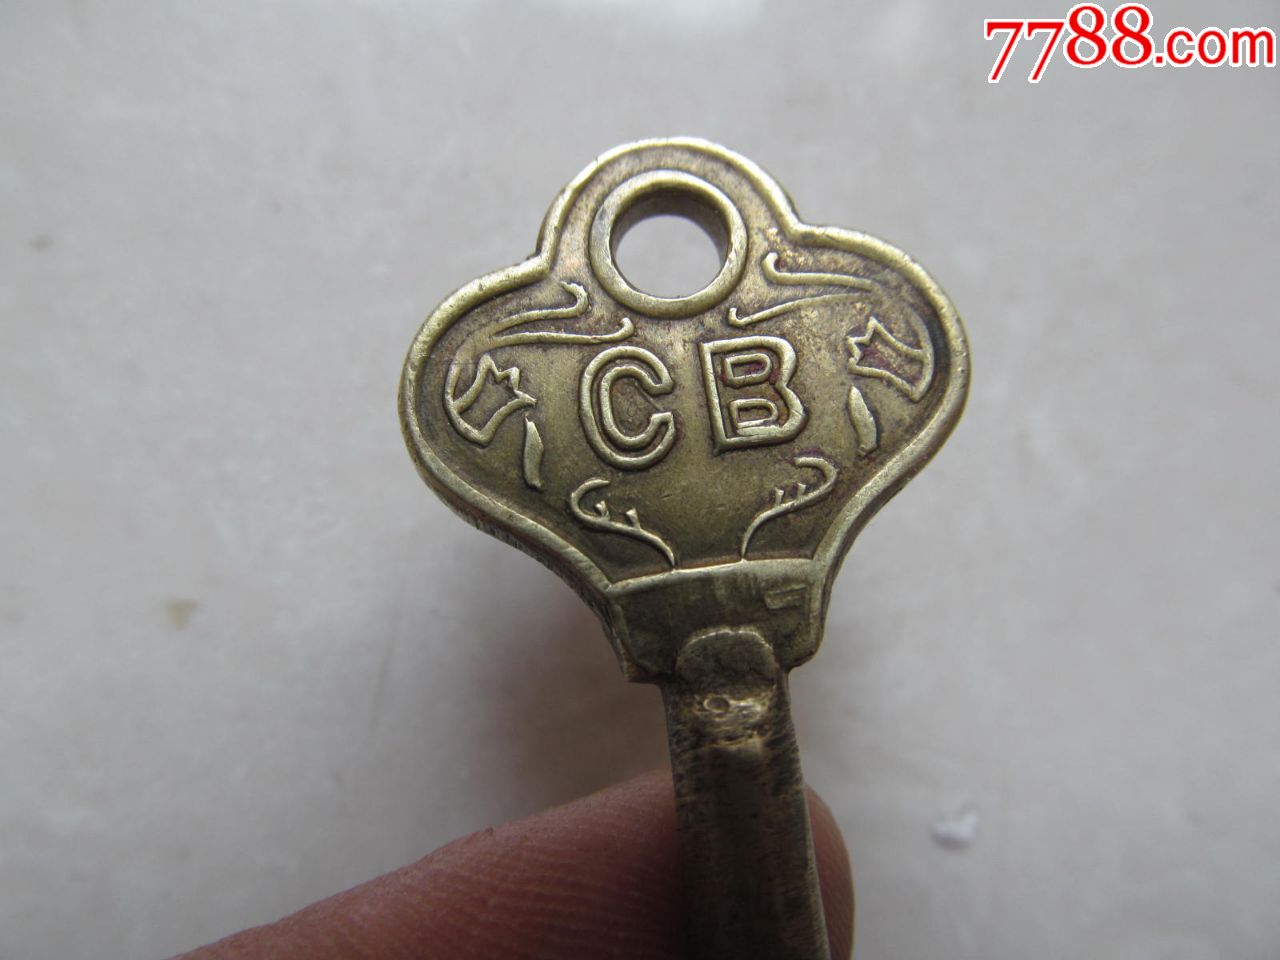 老铜钥匙,上写有中国船用的拼音,有铁锚,另一